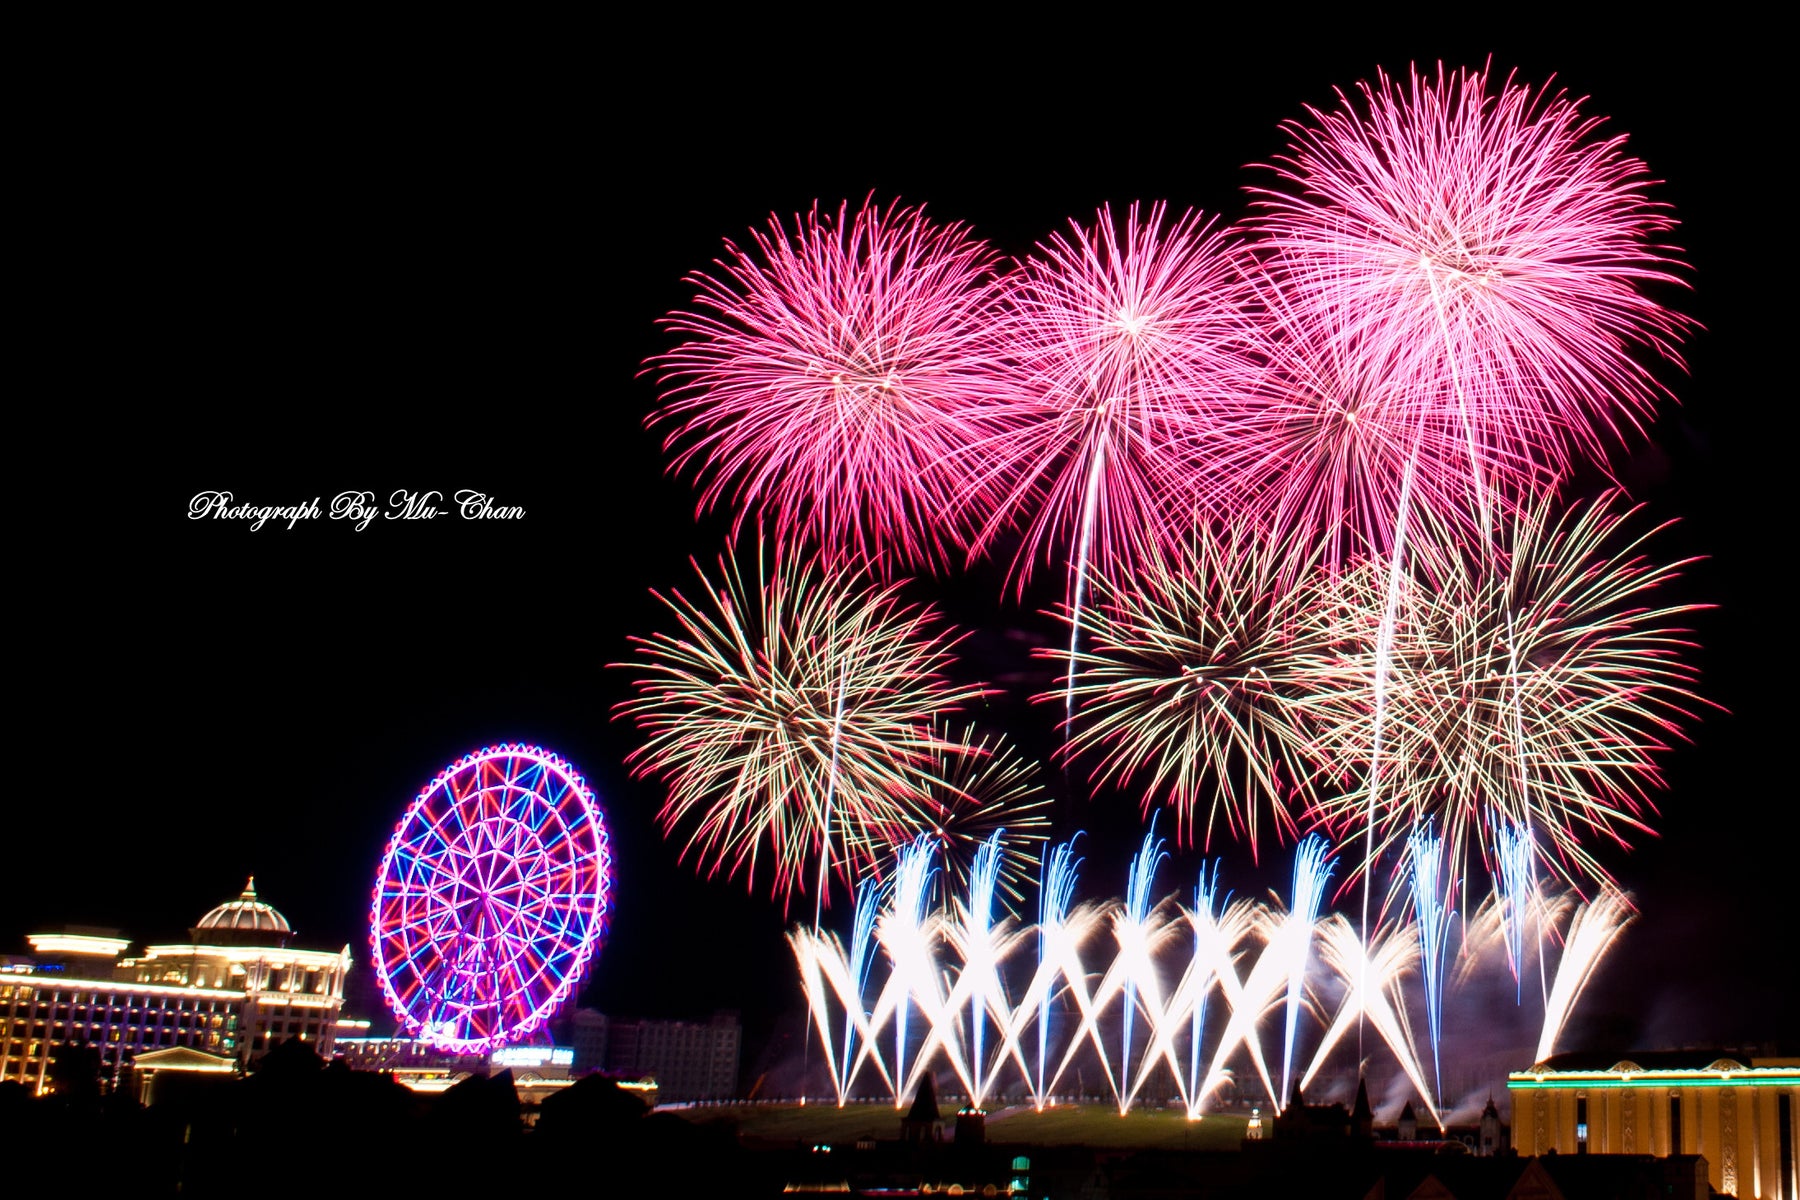 More flights to Da Nang during International Fireworks Festival